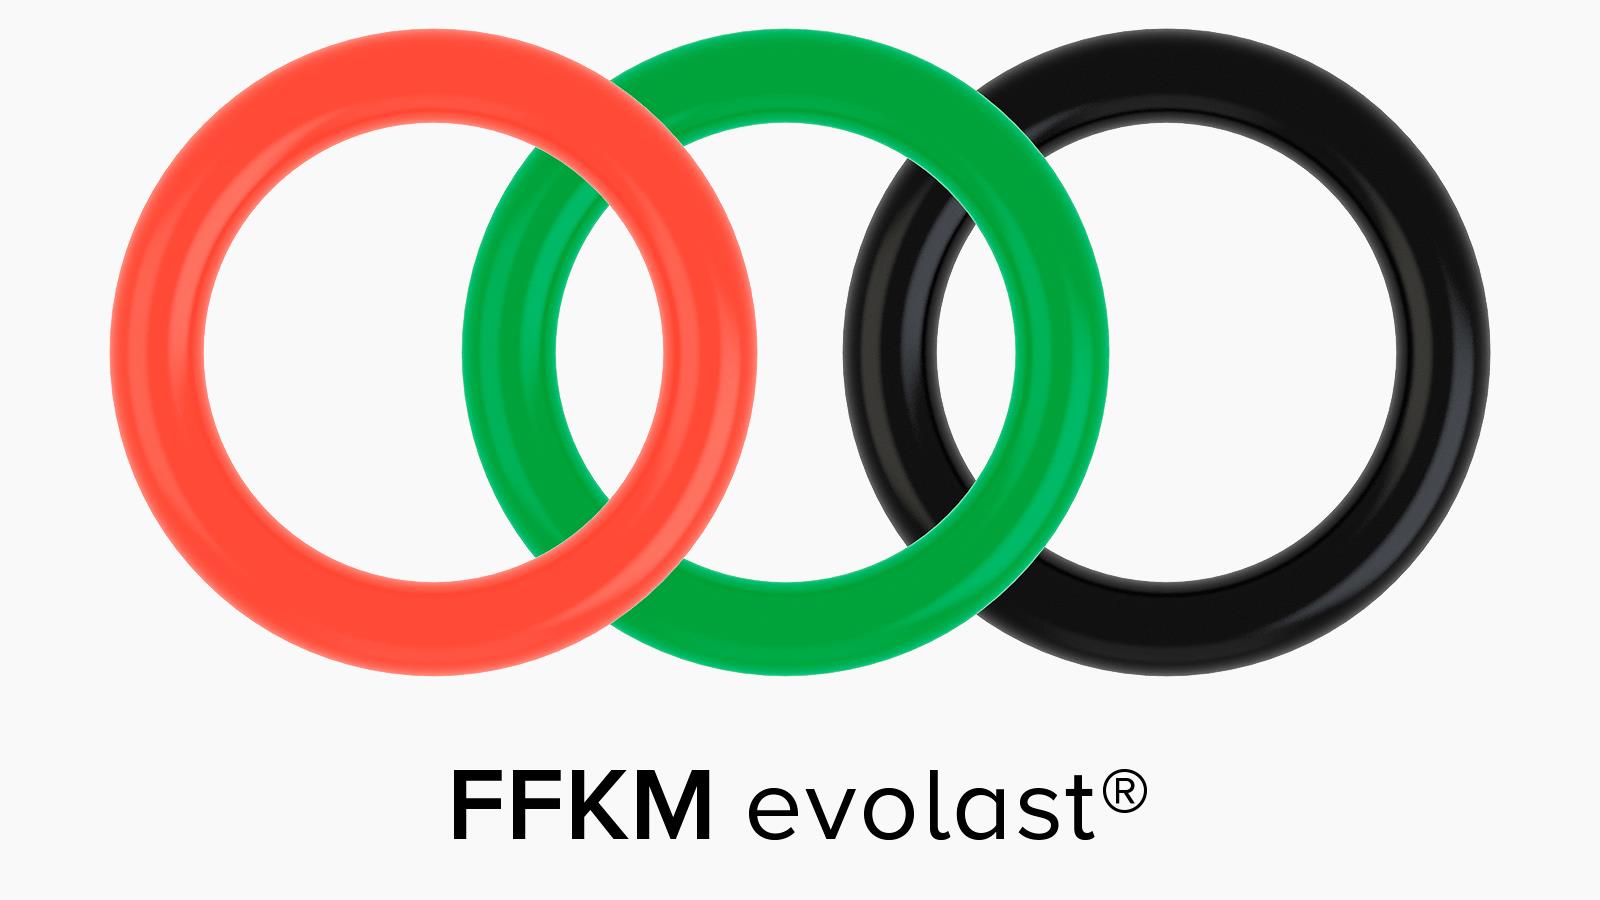 FFKM Evolast® un perfluoroelastómero con mucho éxito